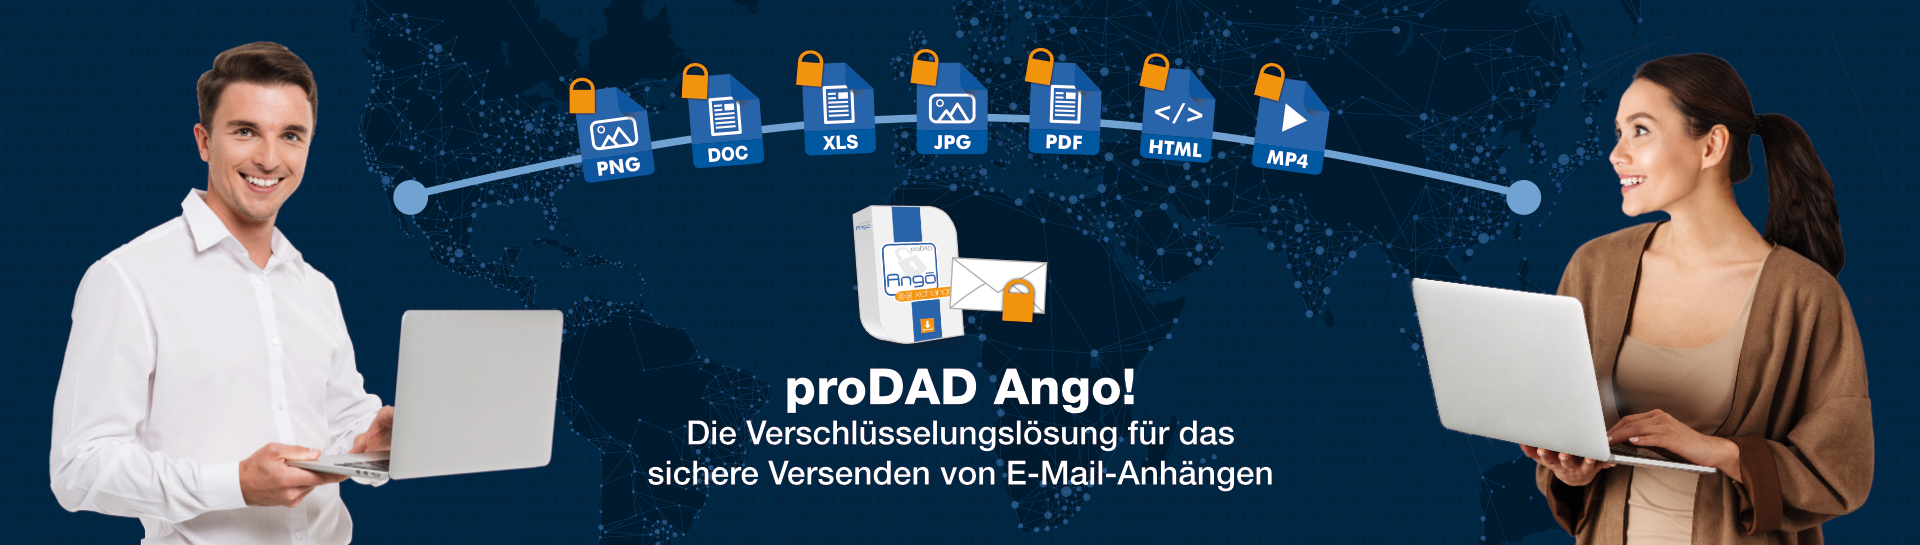 proDAD Ango - Die Verschlüsselungslösung für das sichere Versenden von Email-Anhängen